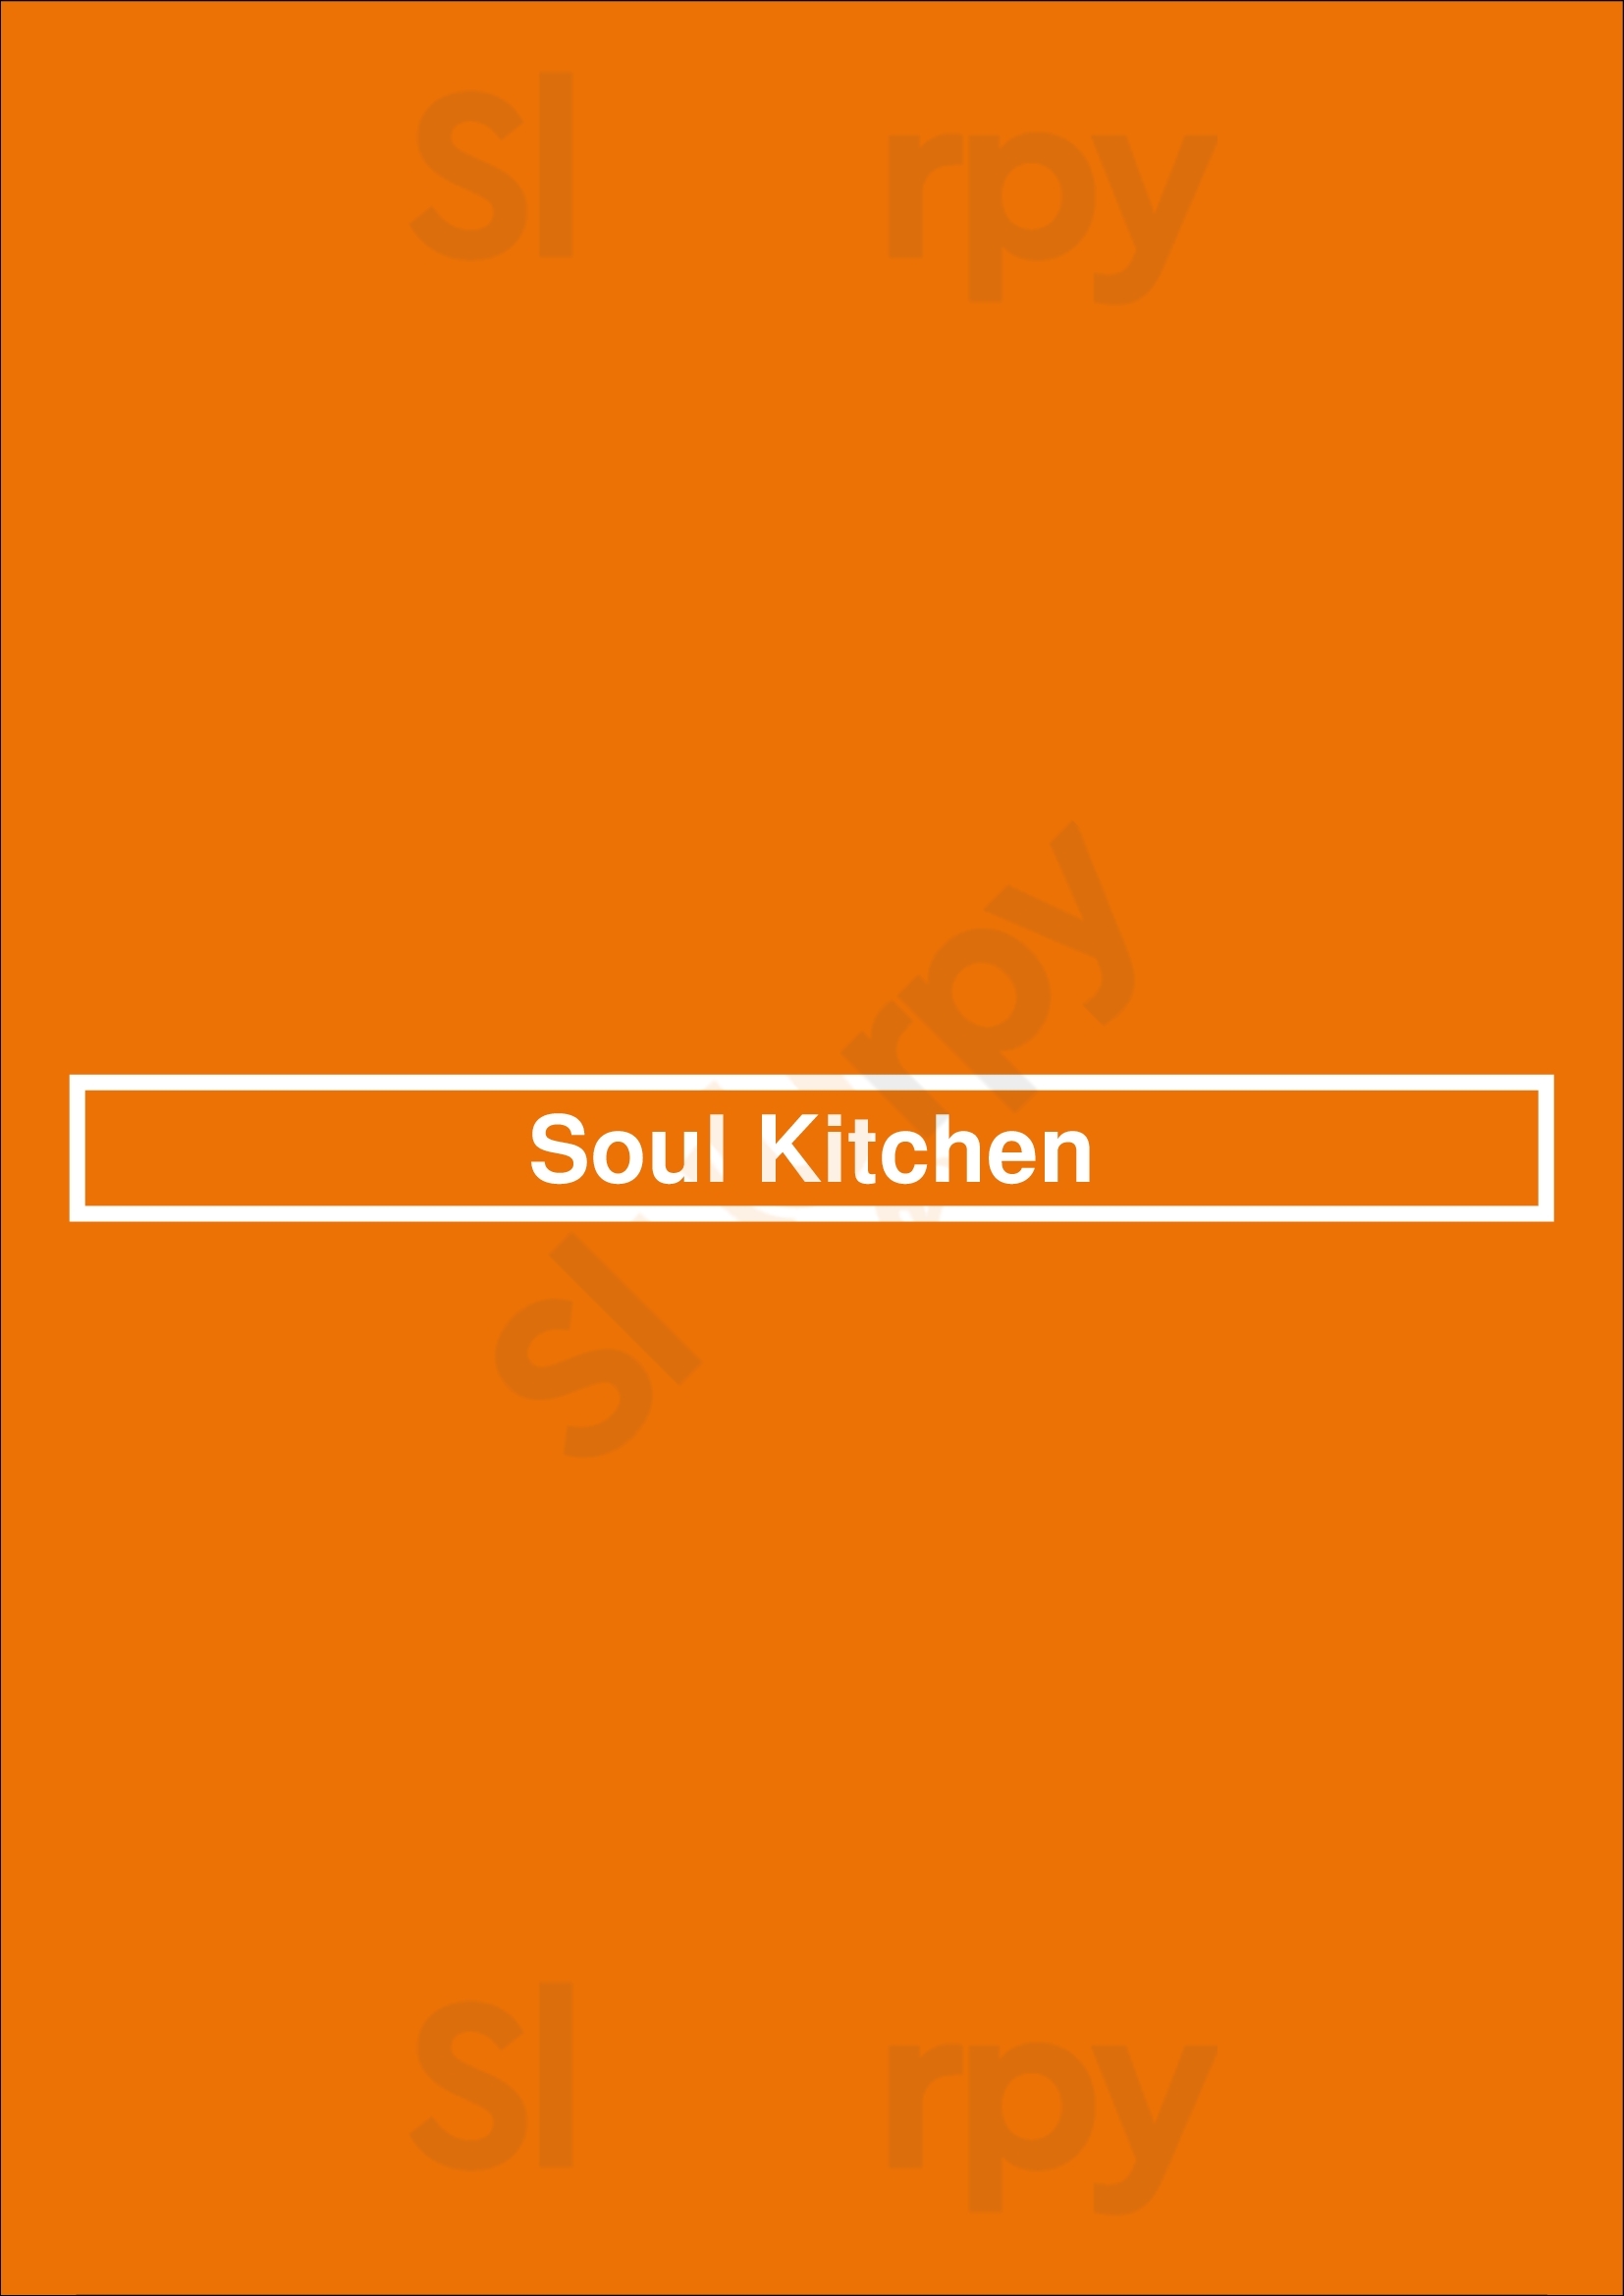 Soul Kitchen Eindhoven Menu - 1